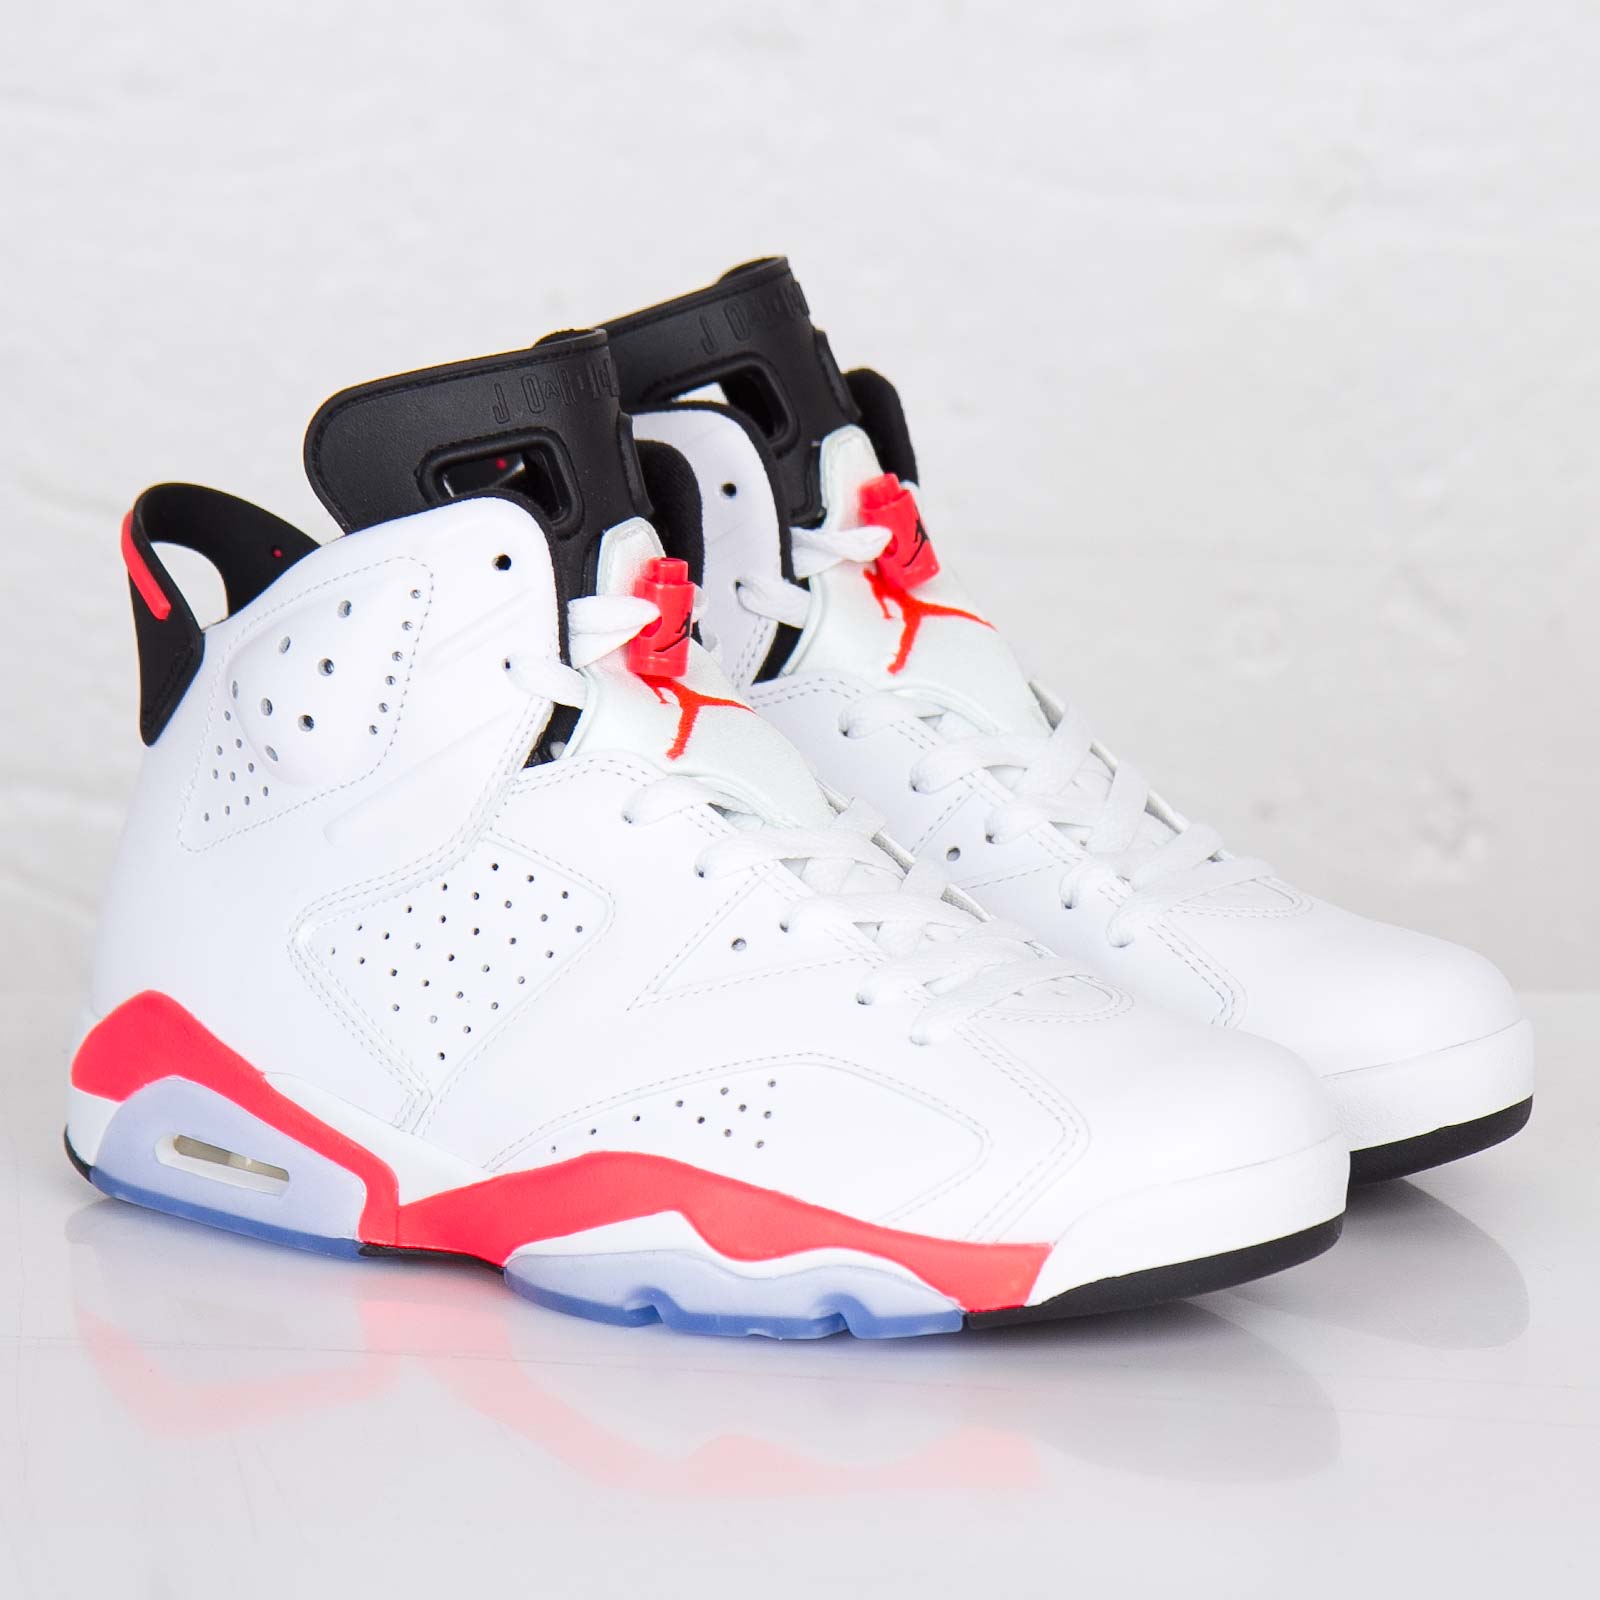 Jordans 6 retro white infrared, noch irgendwo zu kaufen? (Schuhe, Nike